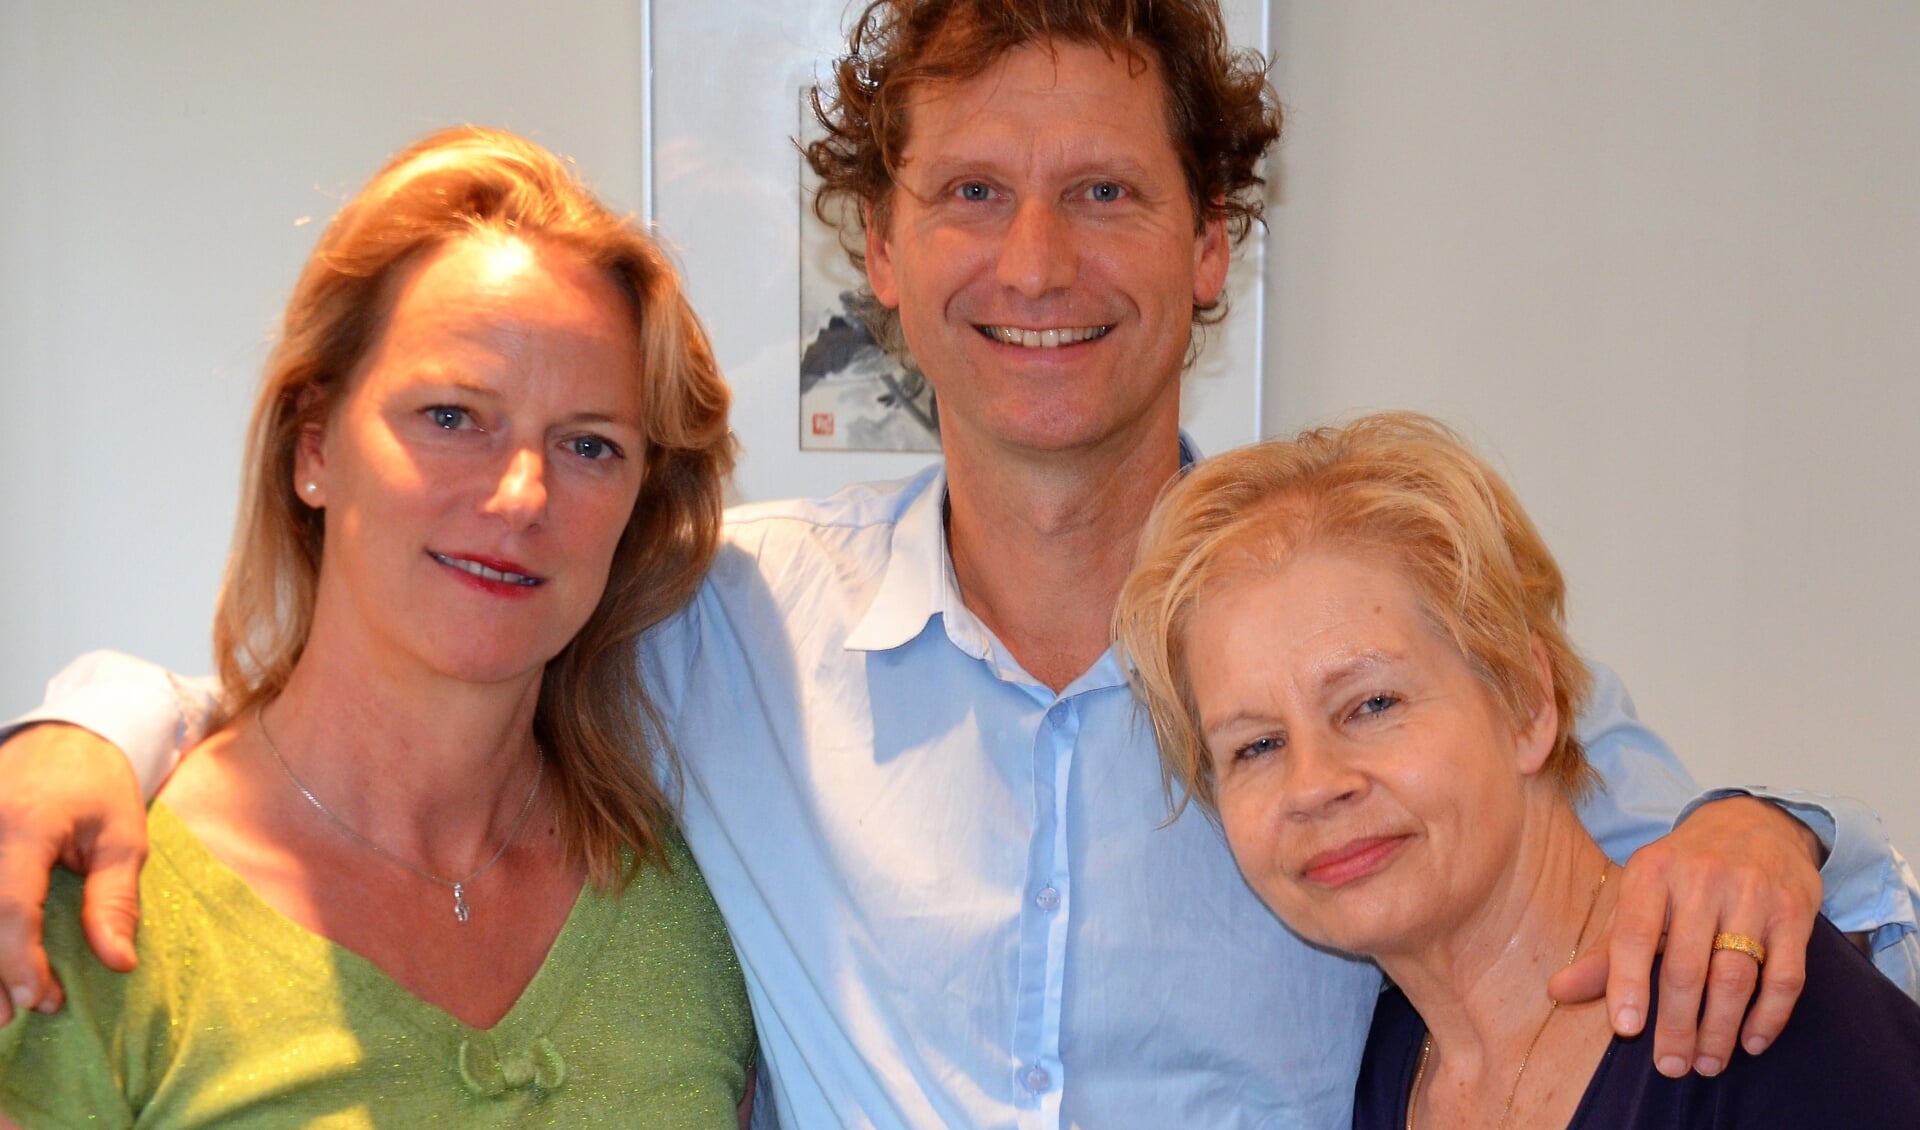 Els van der Waard, Emile van der Peet en Elizabeth Scarlat. Foto: PR